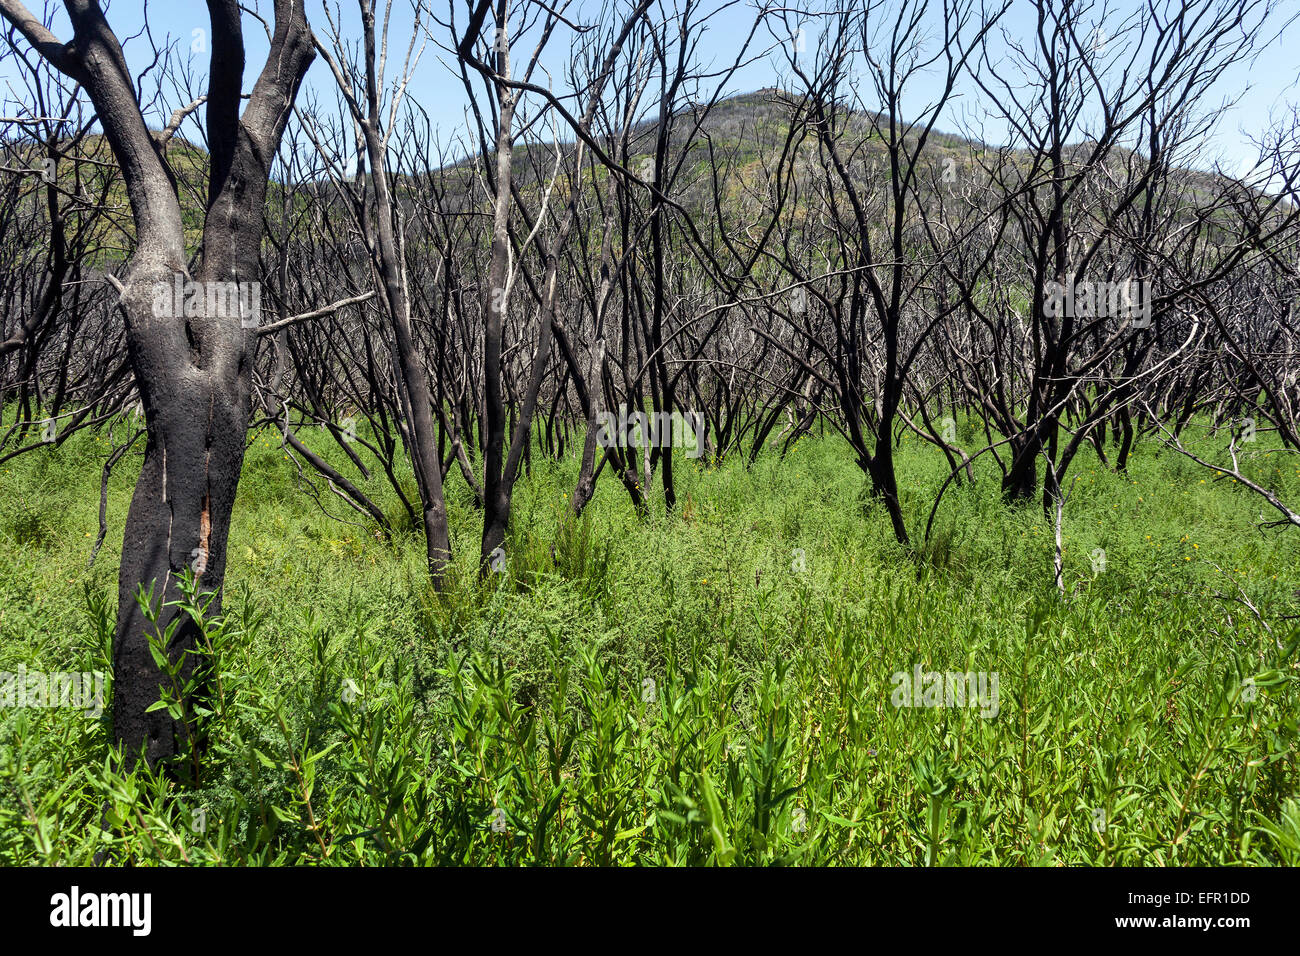 Des arbustes calcinés dans la végétation verte, les traces du feu de forêt de 2012, derrière le Garajonay, La Gomera, Canary Islands, Spain Banque D'Images